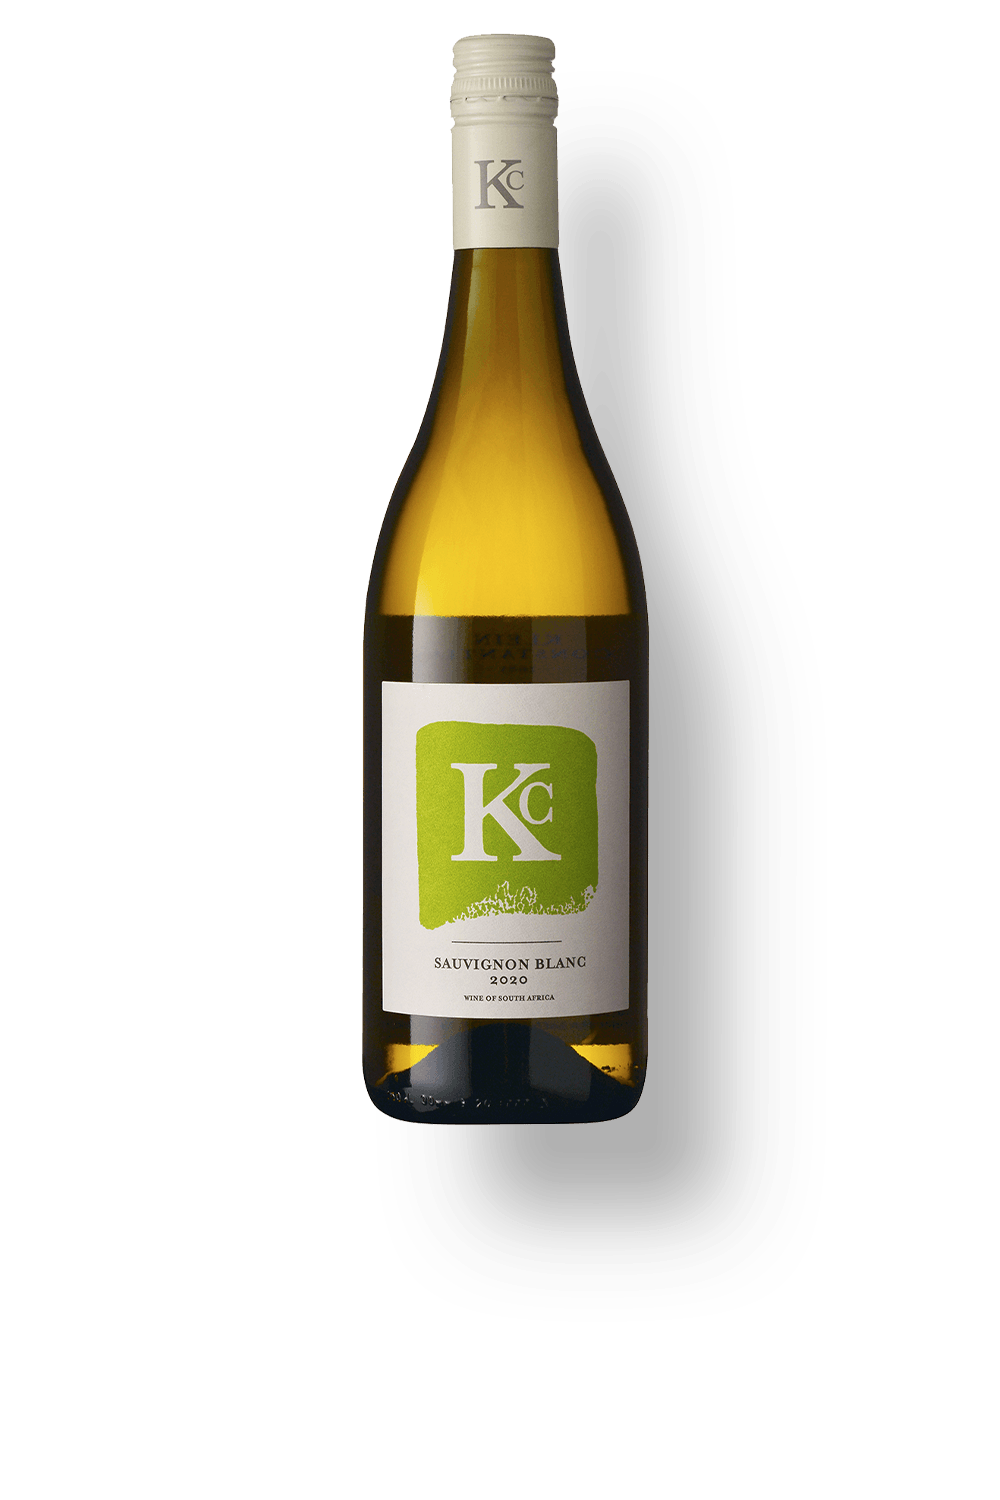 027576---Klein-Constantia-Sauvignon-Blanc-2020--